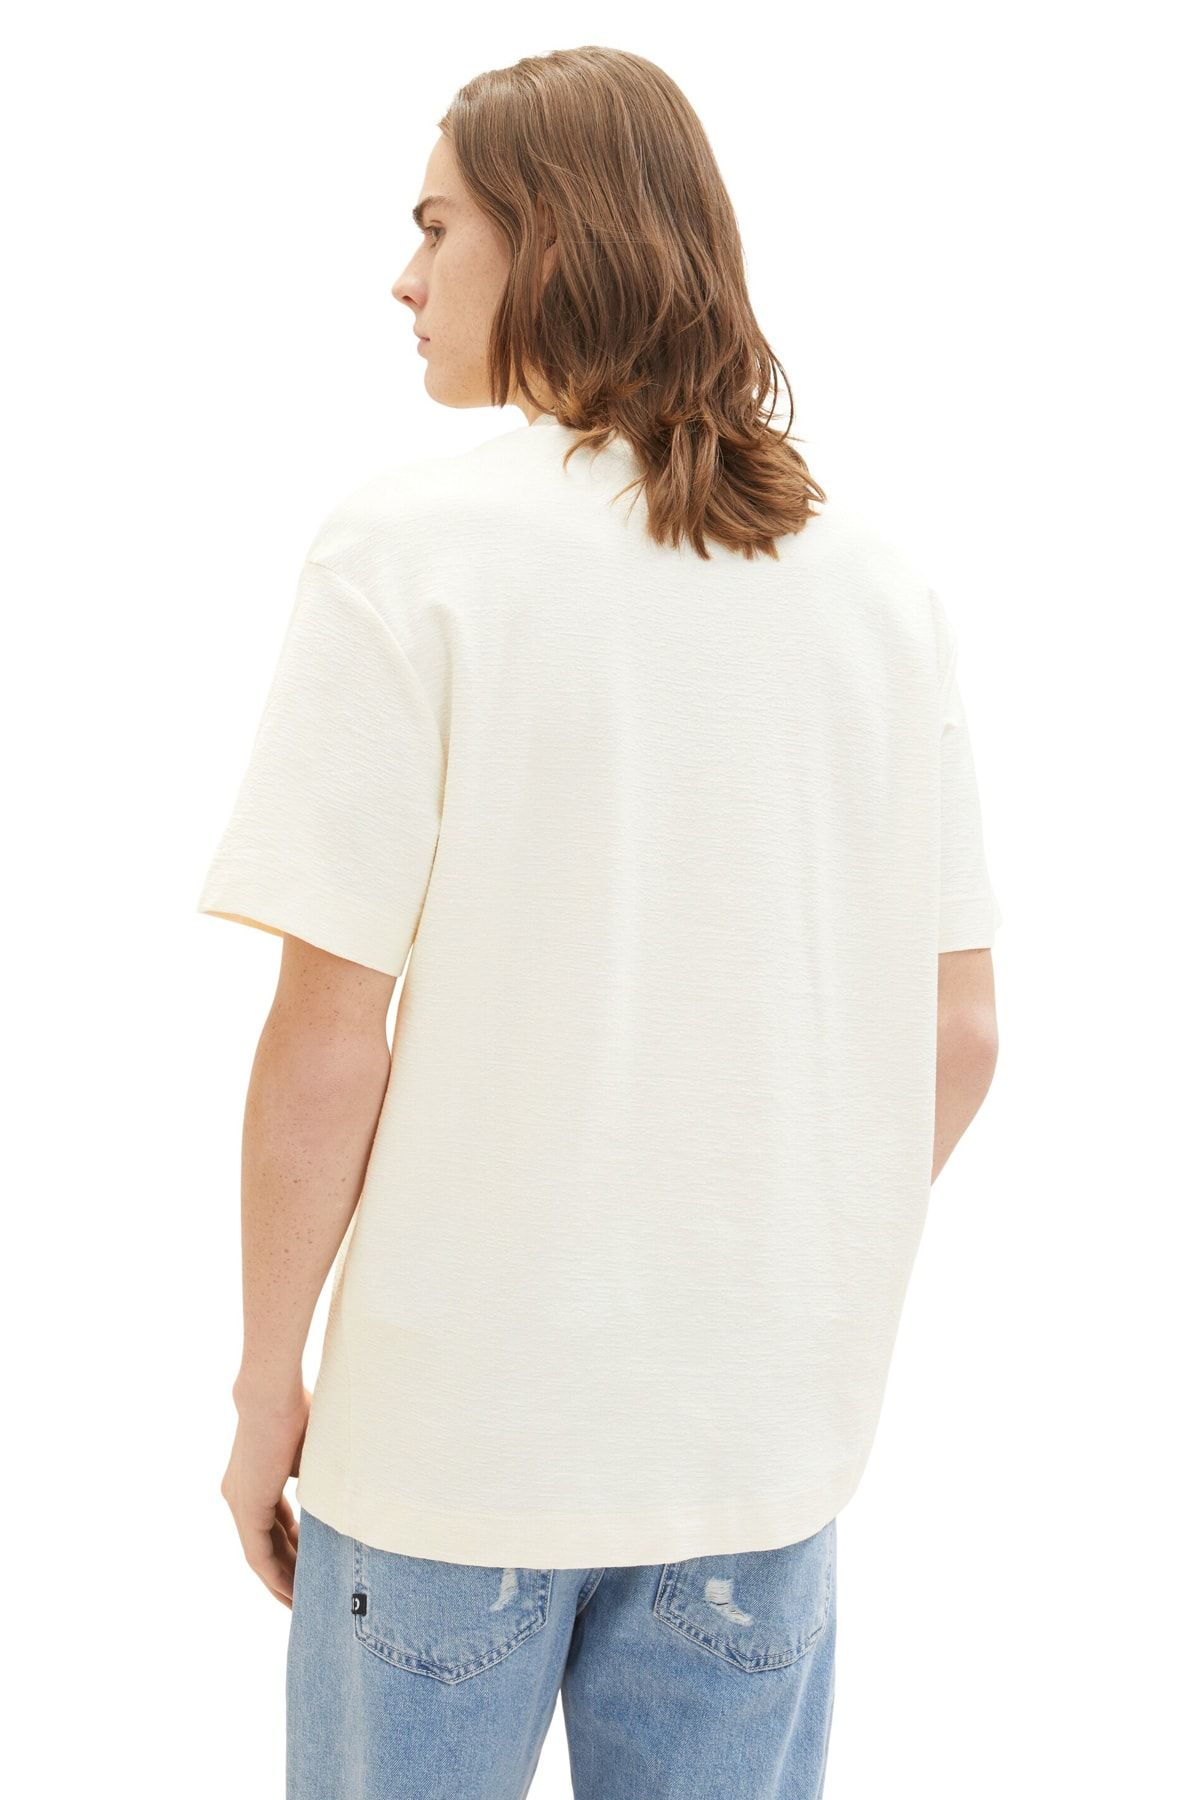 Tom Tailor Denim Men's Wool White T-Shirt - Trendyol